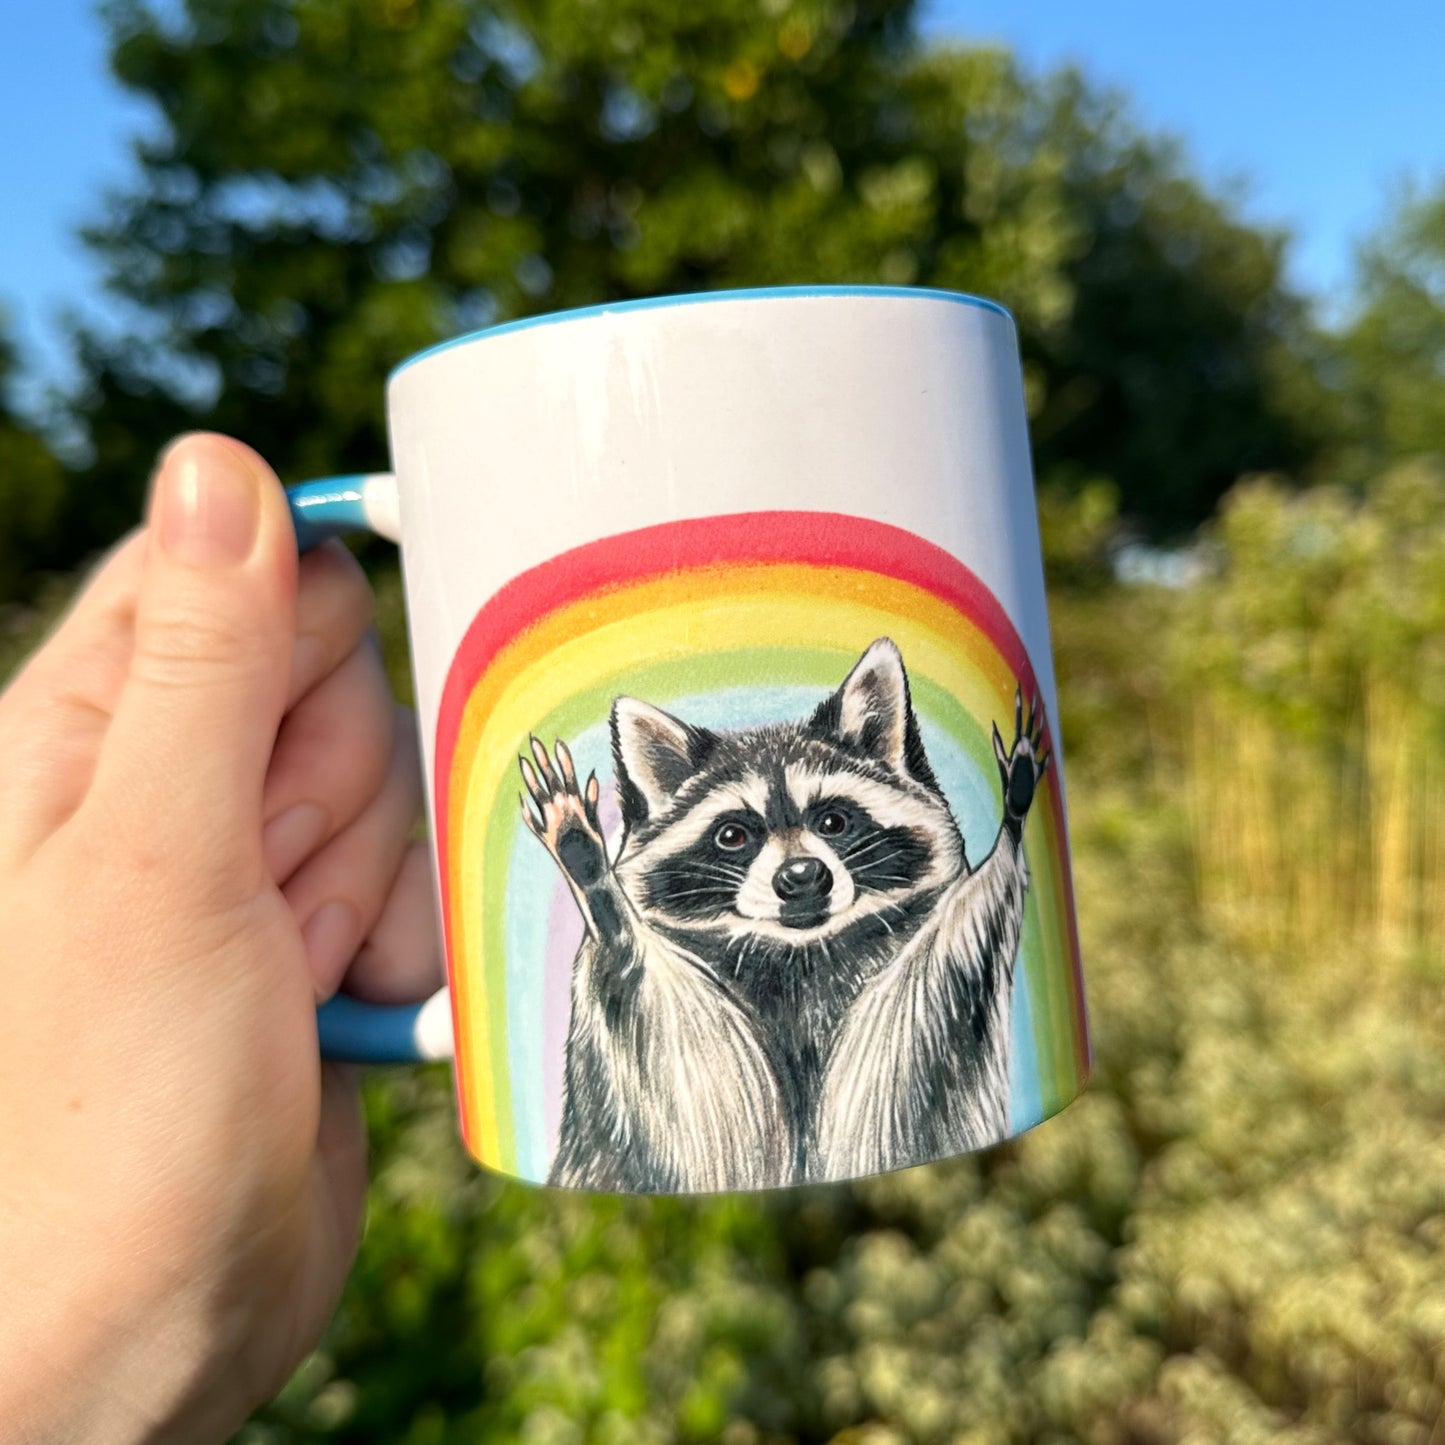 Rainbow Raccoon Mug